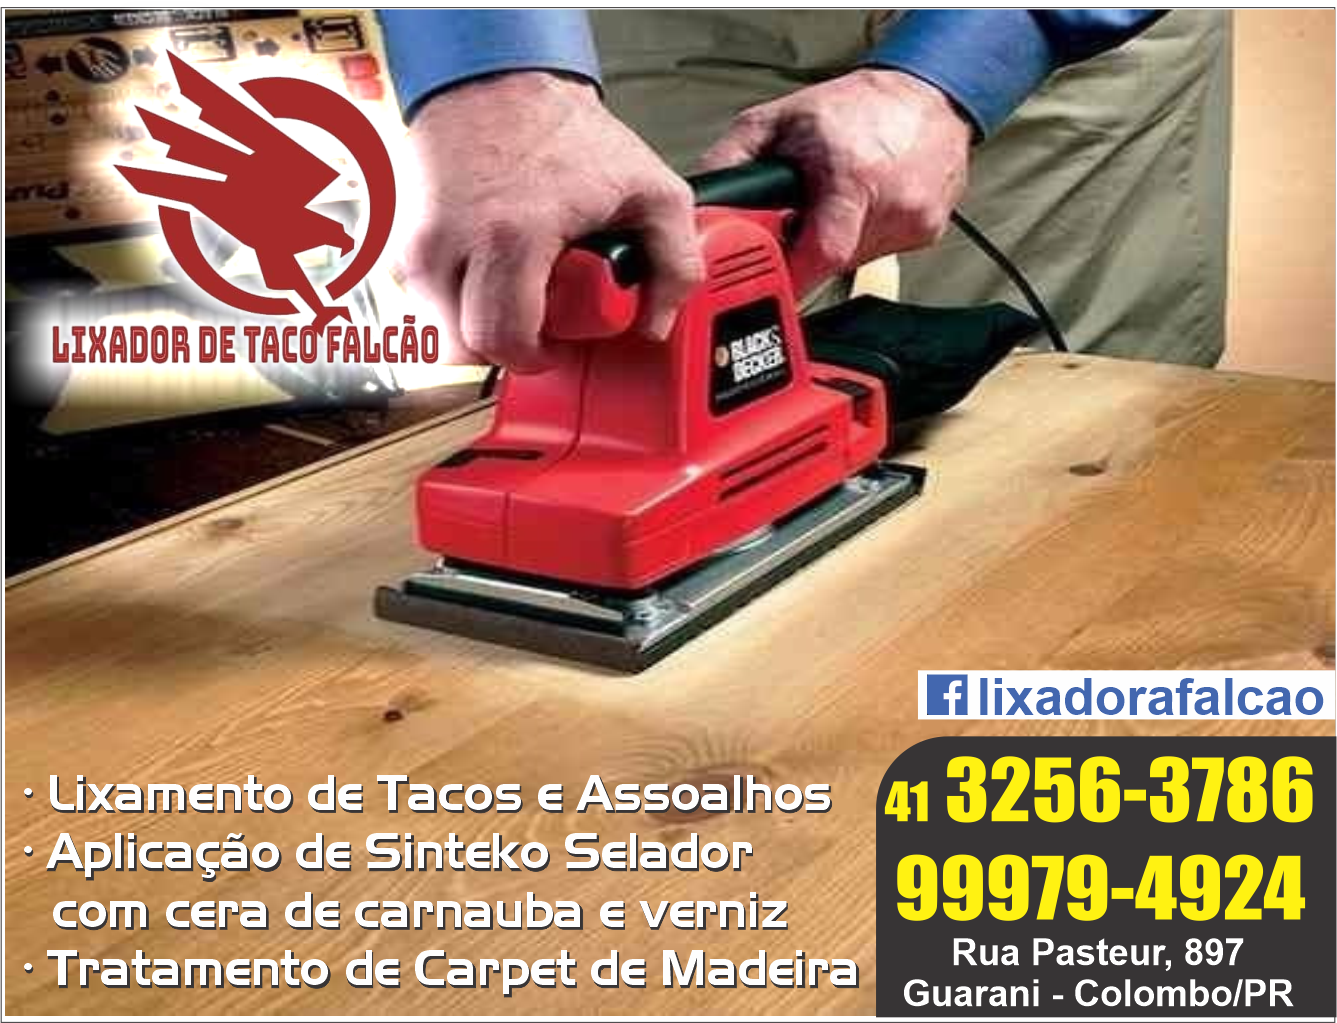 Lixador de Taco Falcão      AVENIDA JOÃO BATISTA LOVATO, 897, COLOMBO - PR  Fones: (41)3256-3786 / (41) 99979-4924